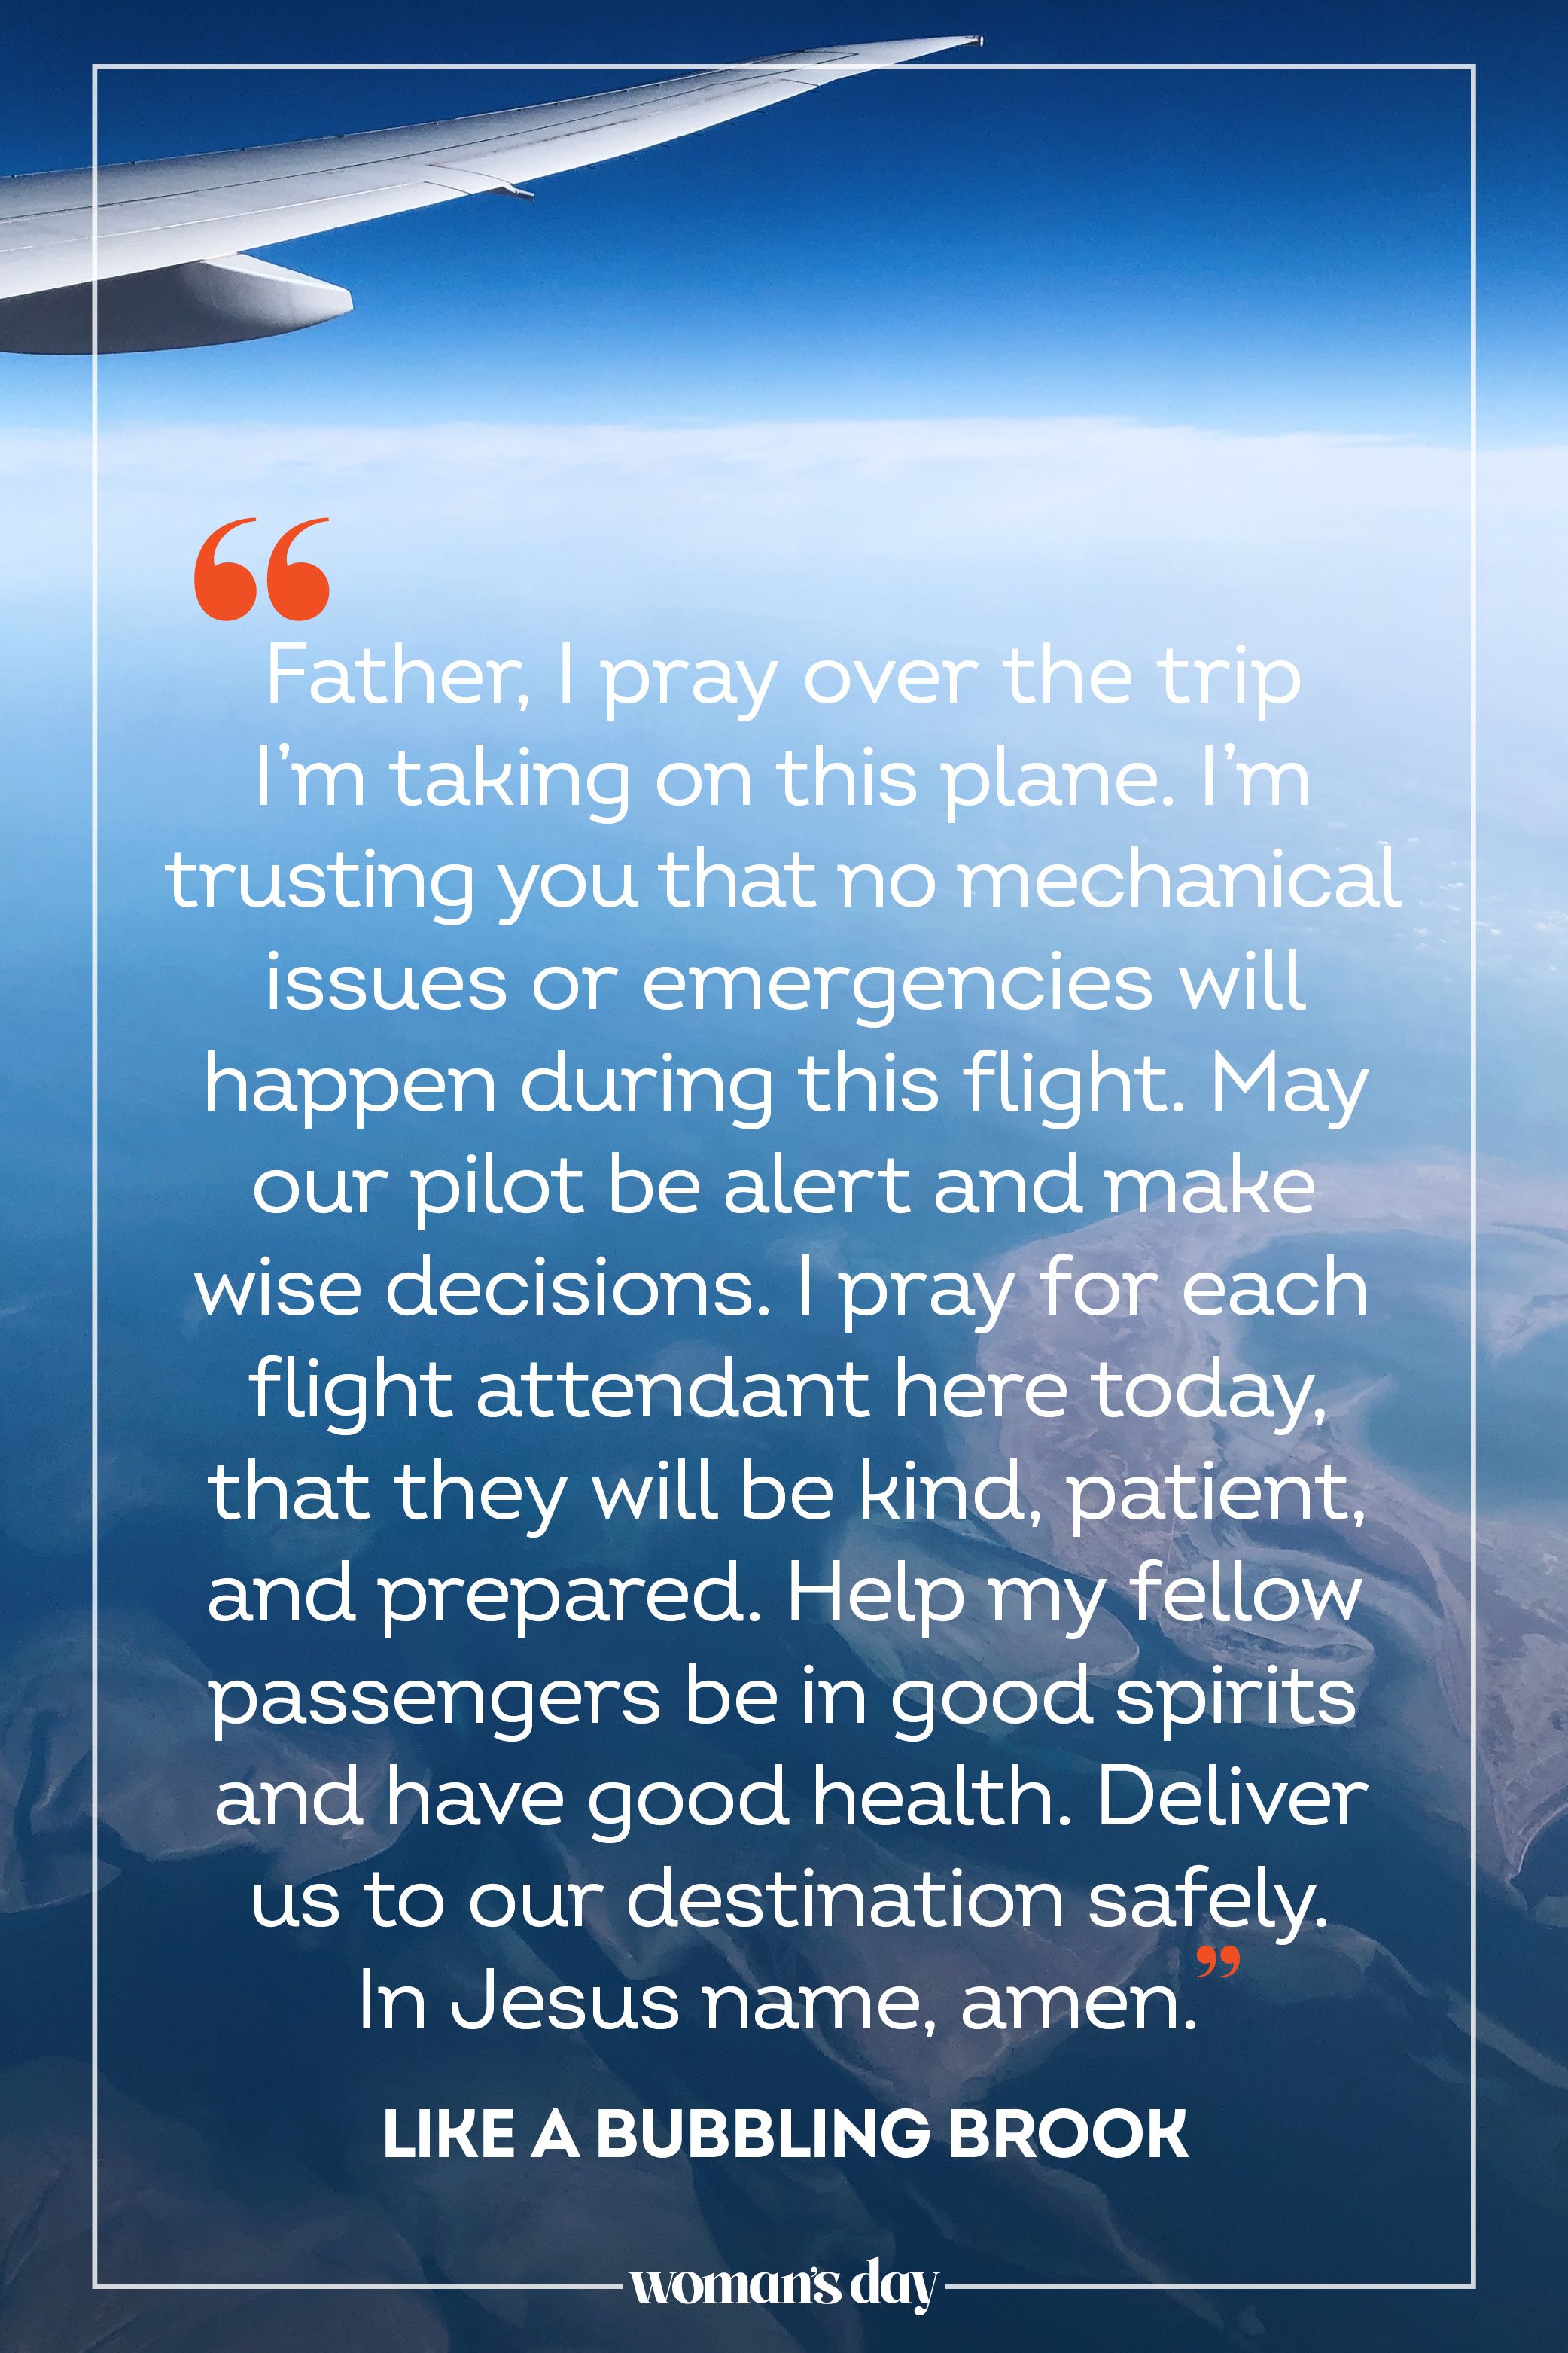 A Catholic prayer for travel safety